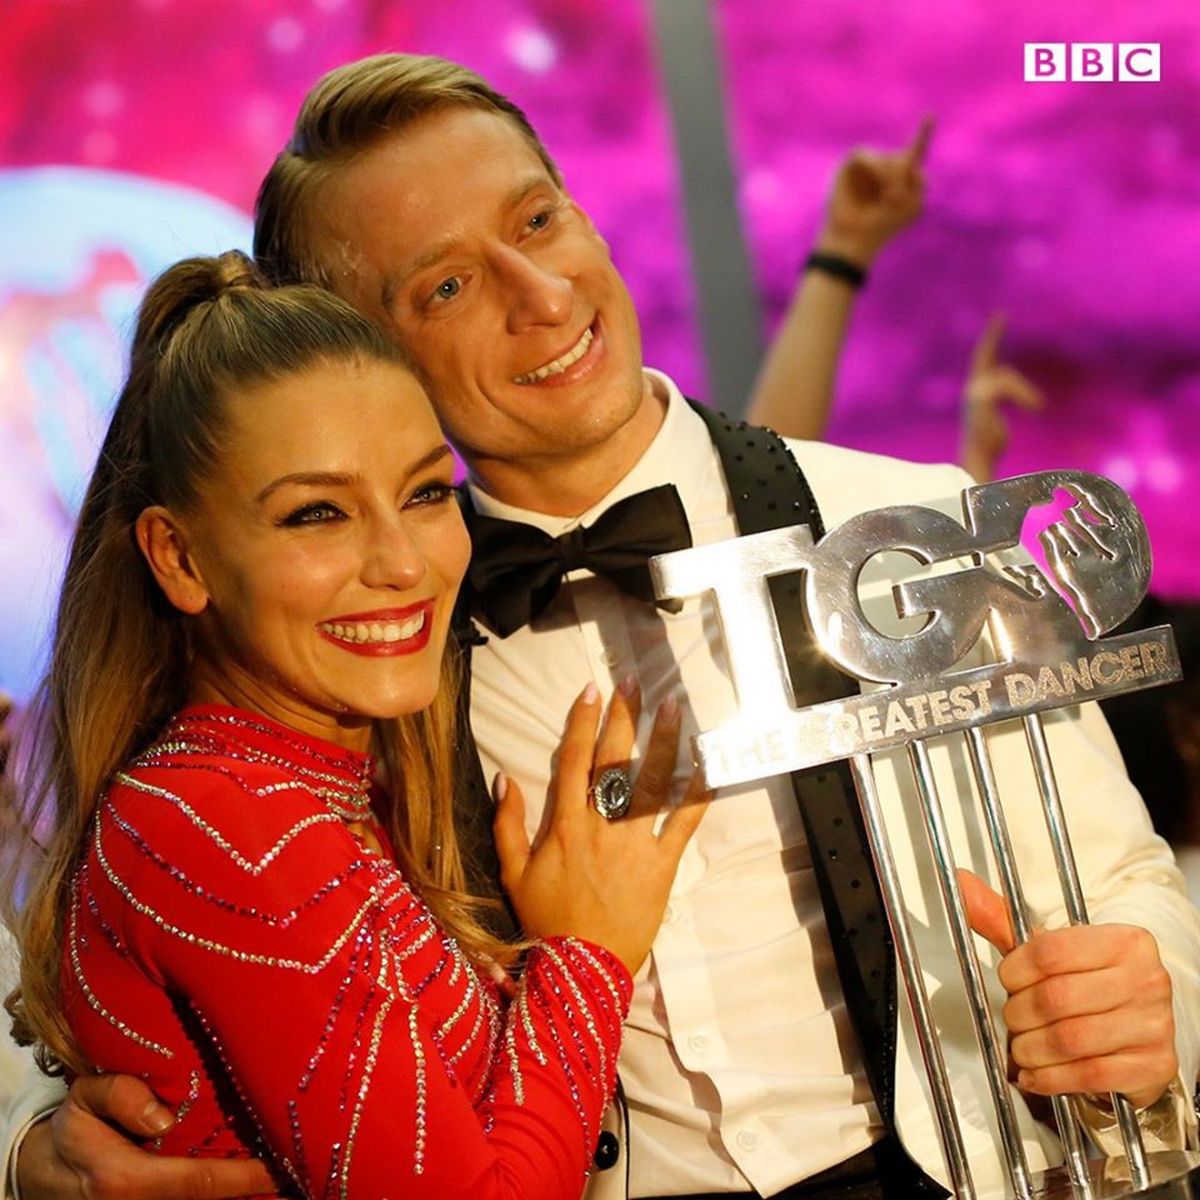 Polacy wygrali brytyjski show taneczny